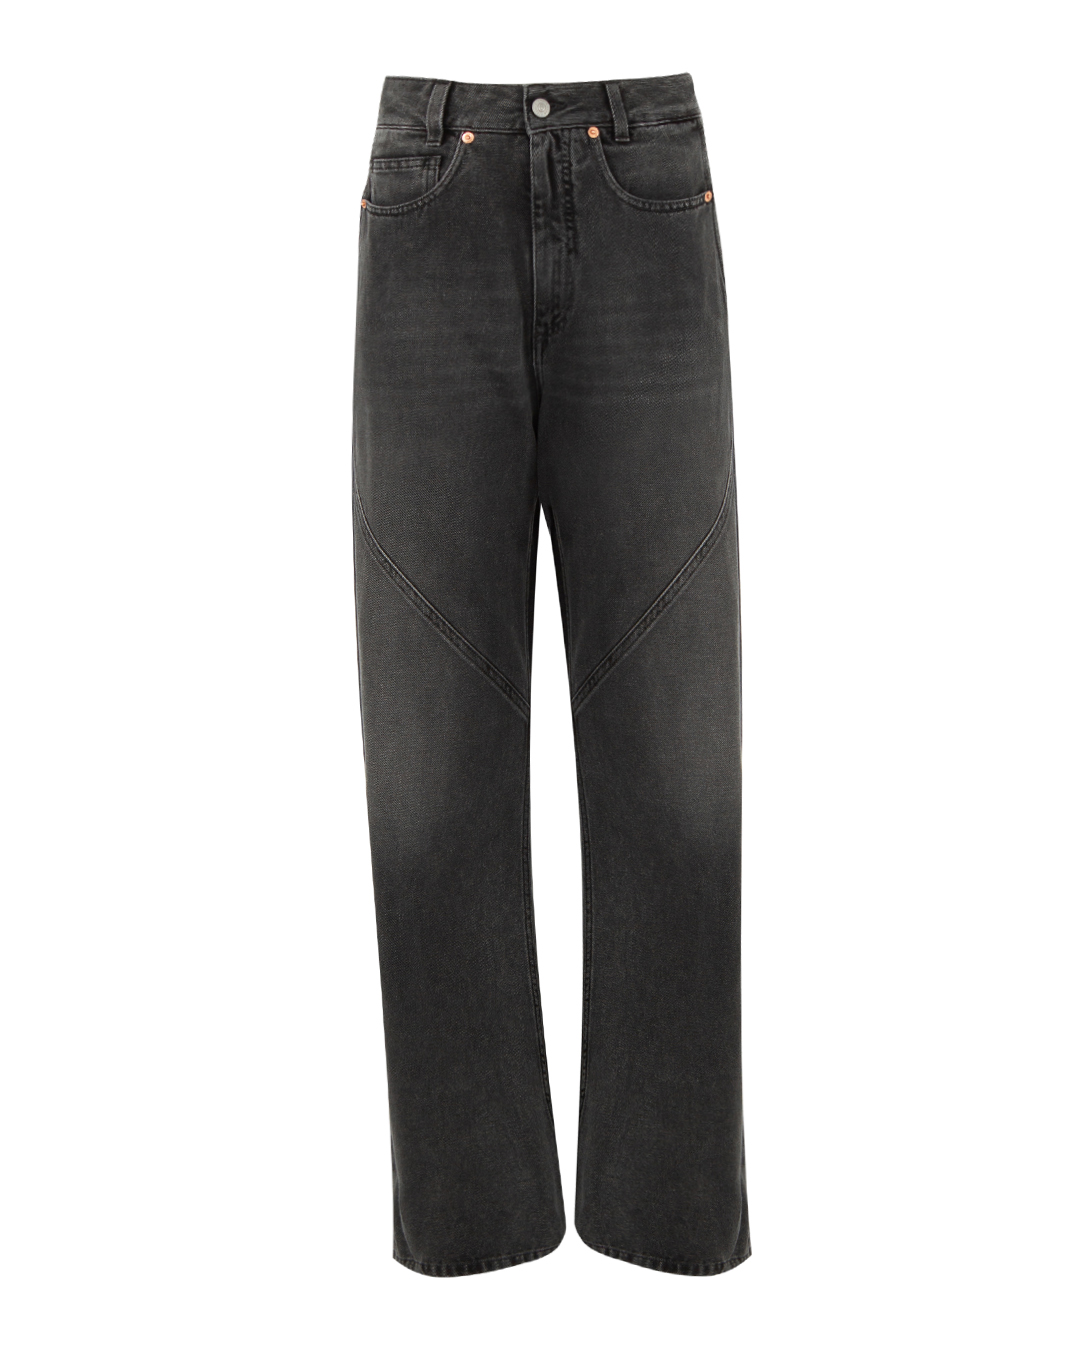 джинсы MM6 Maison Margiela S62LB0160 черный 27, размер 27